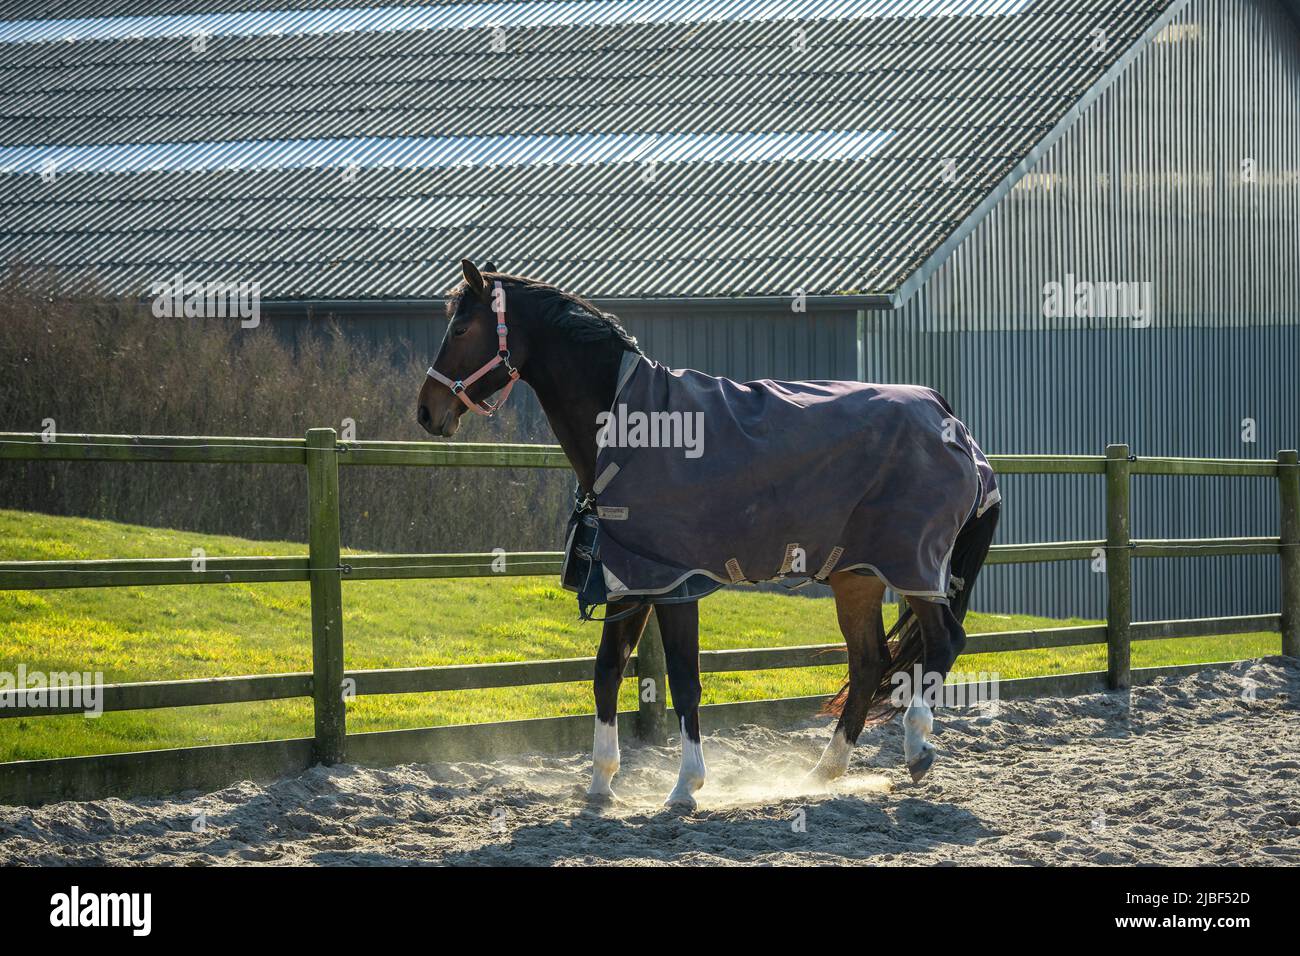 Une jument danoise à sang chaud, Dansk Varmblod dans l'écurie. C'est une race danoise de cheval de sport moderne. Assens, Danemark, Europe Banque D'Images